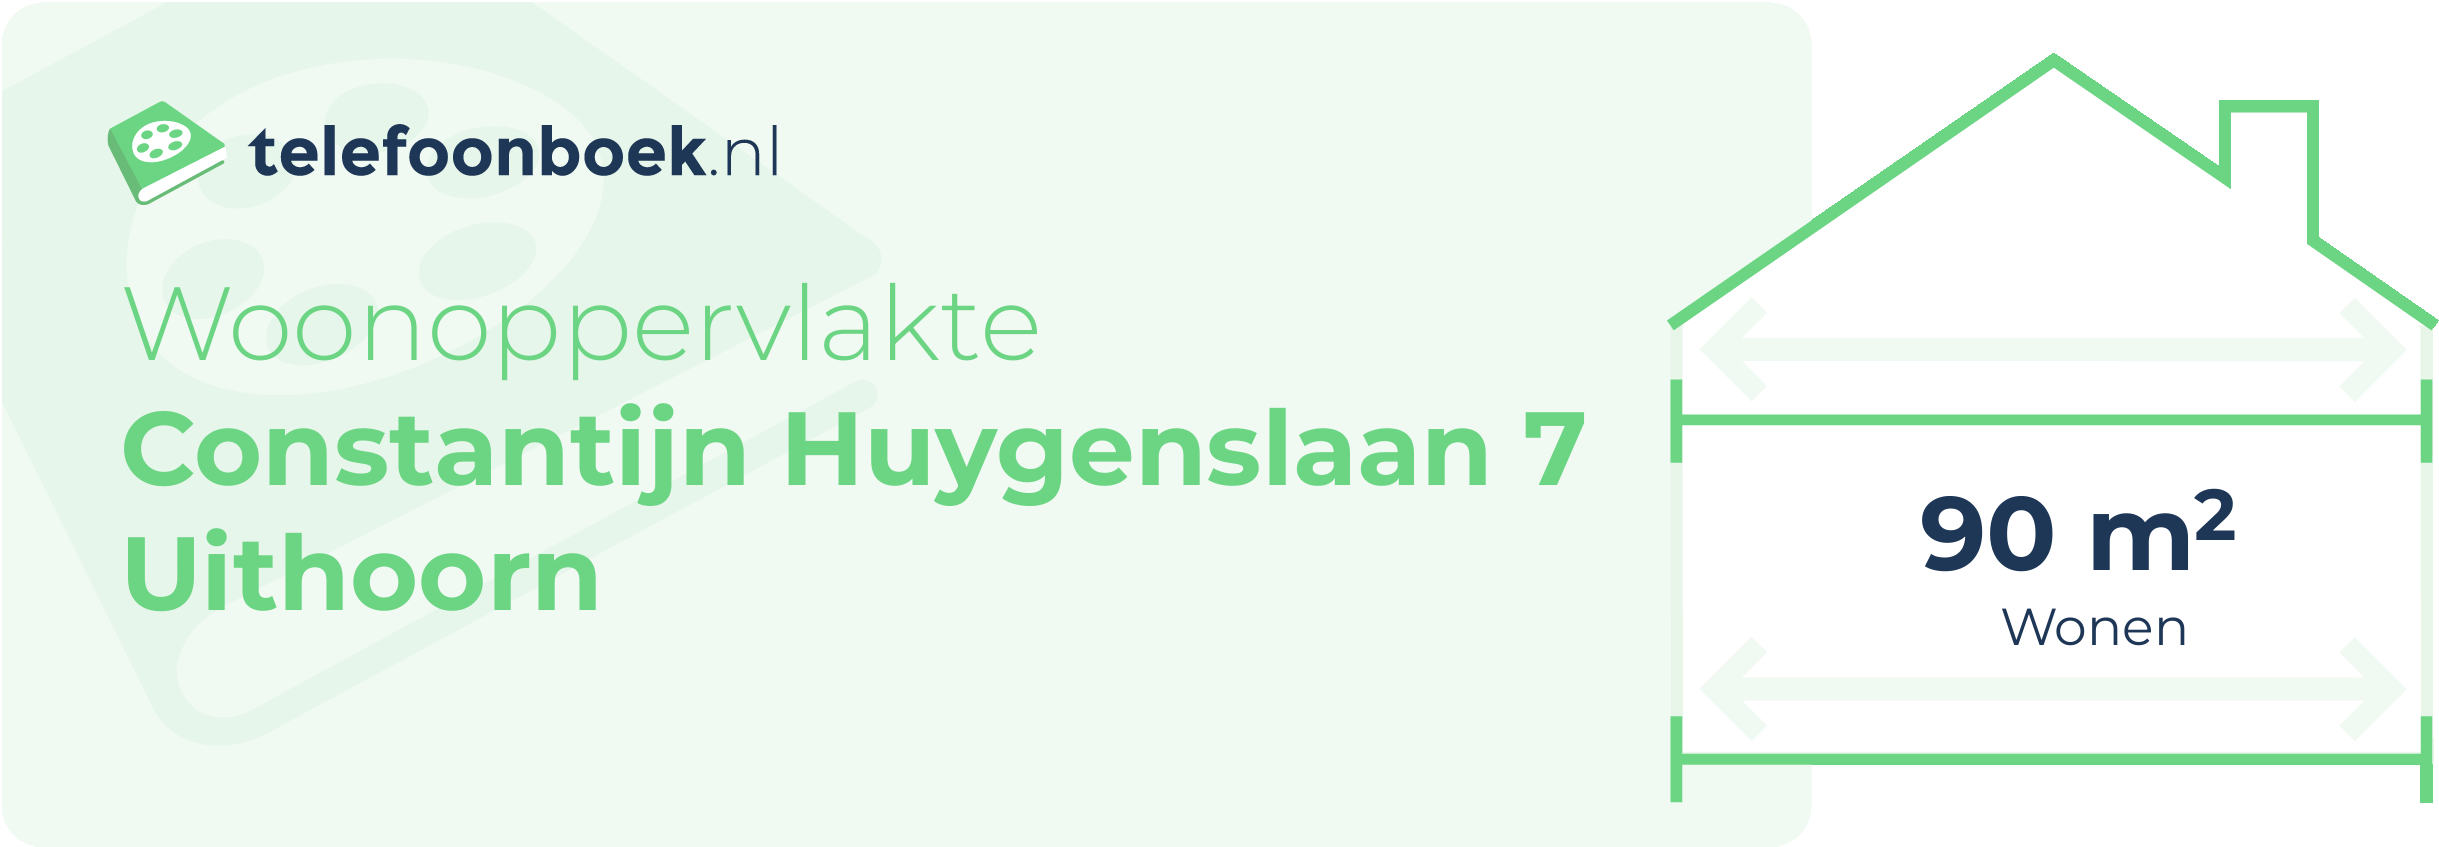 Woonoppervlakte Constantijn Huygenslaan 7 Uithoorn